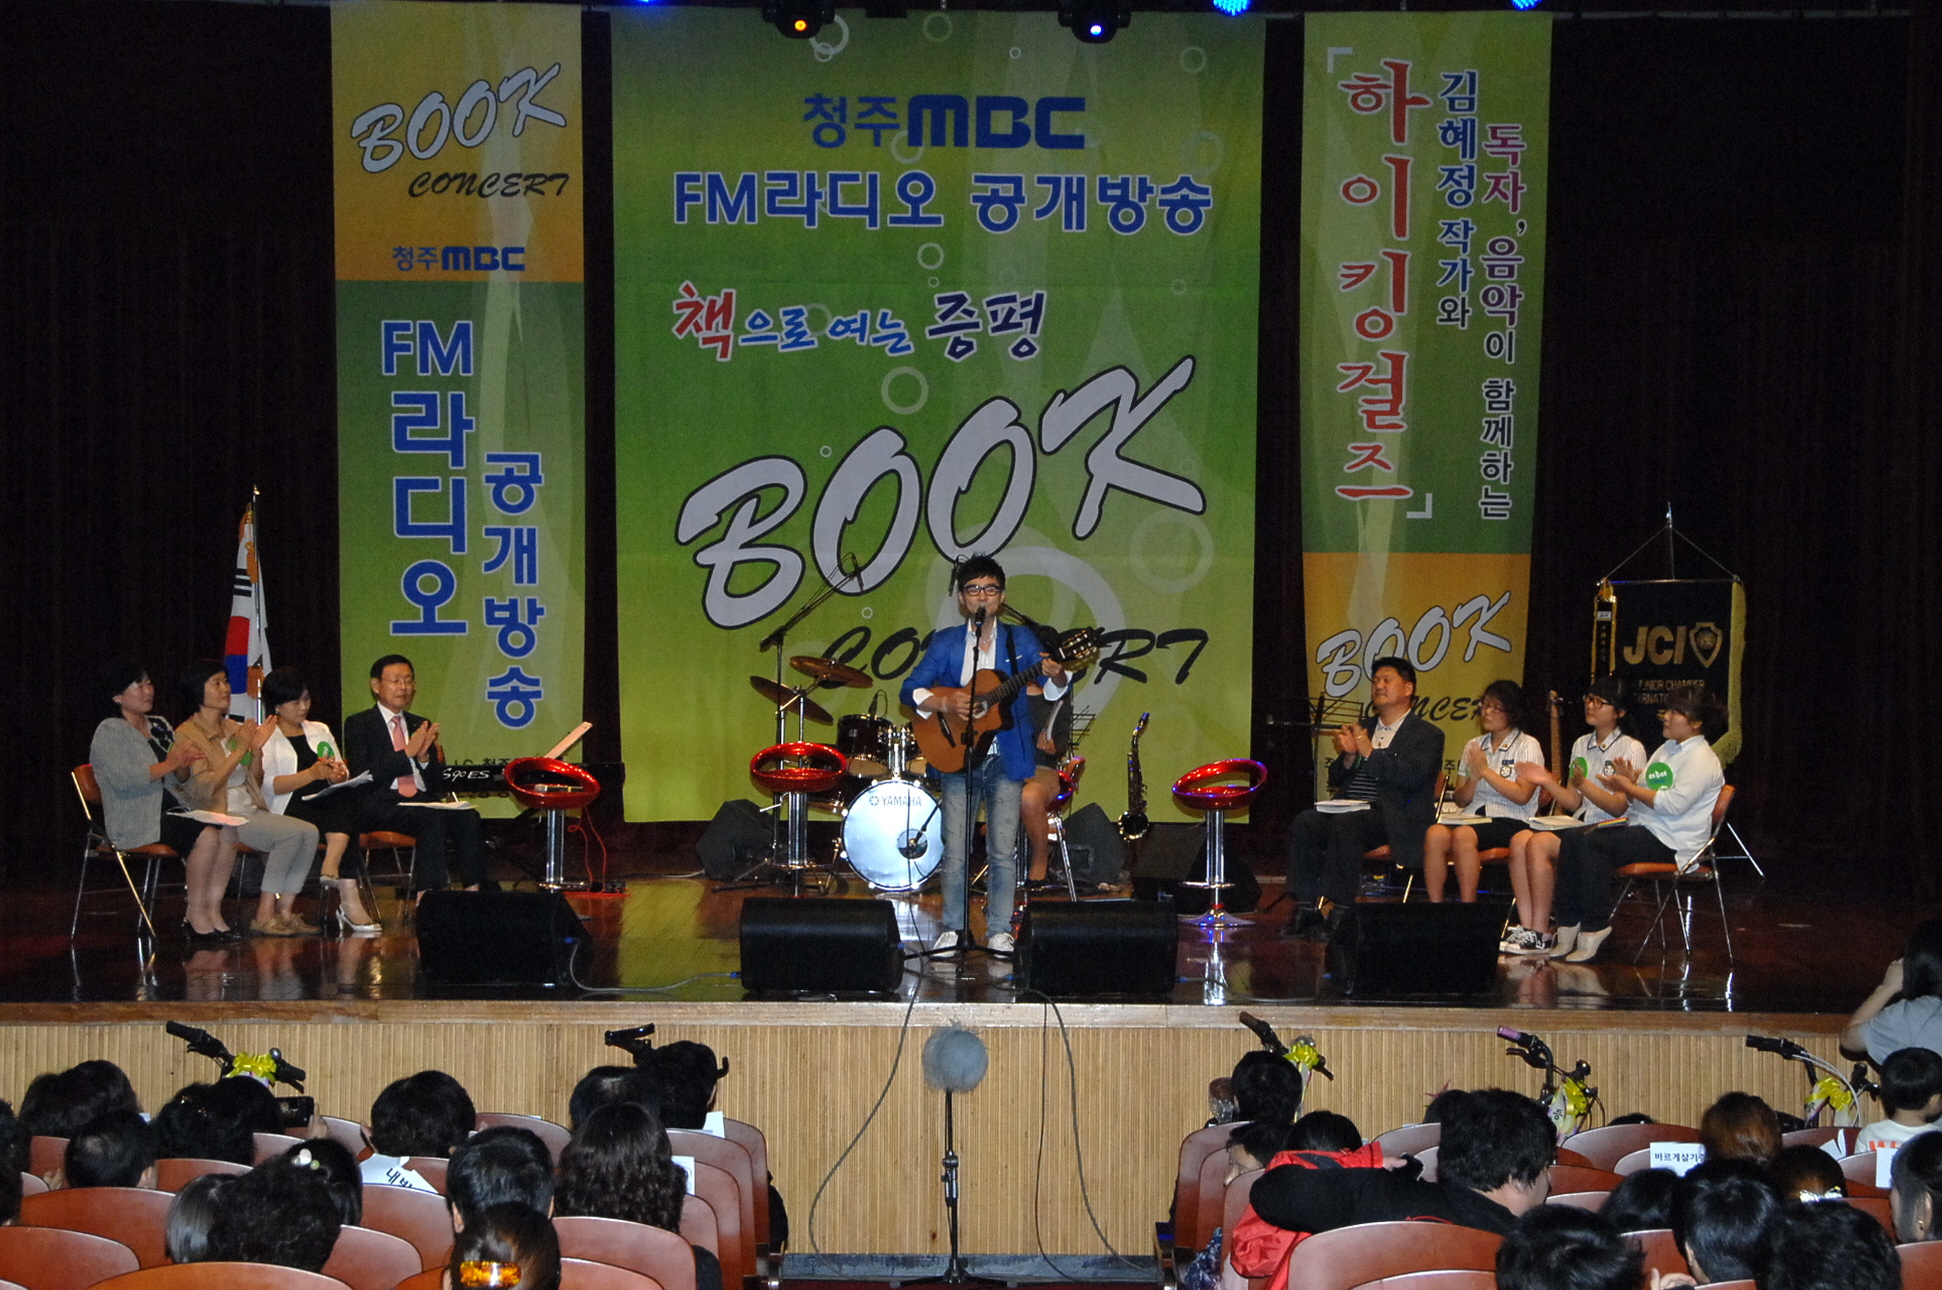 가을밤 책과 함께 펼쳐진 문화마당 북(Book) 콘서트 열려